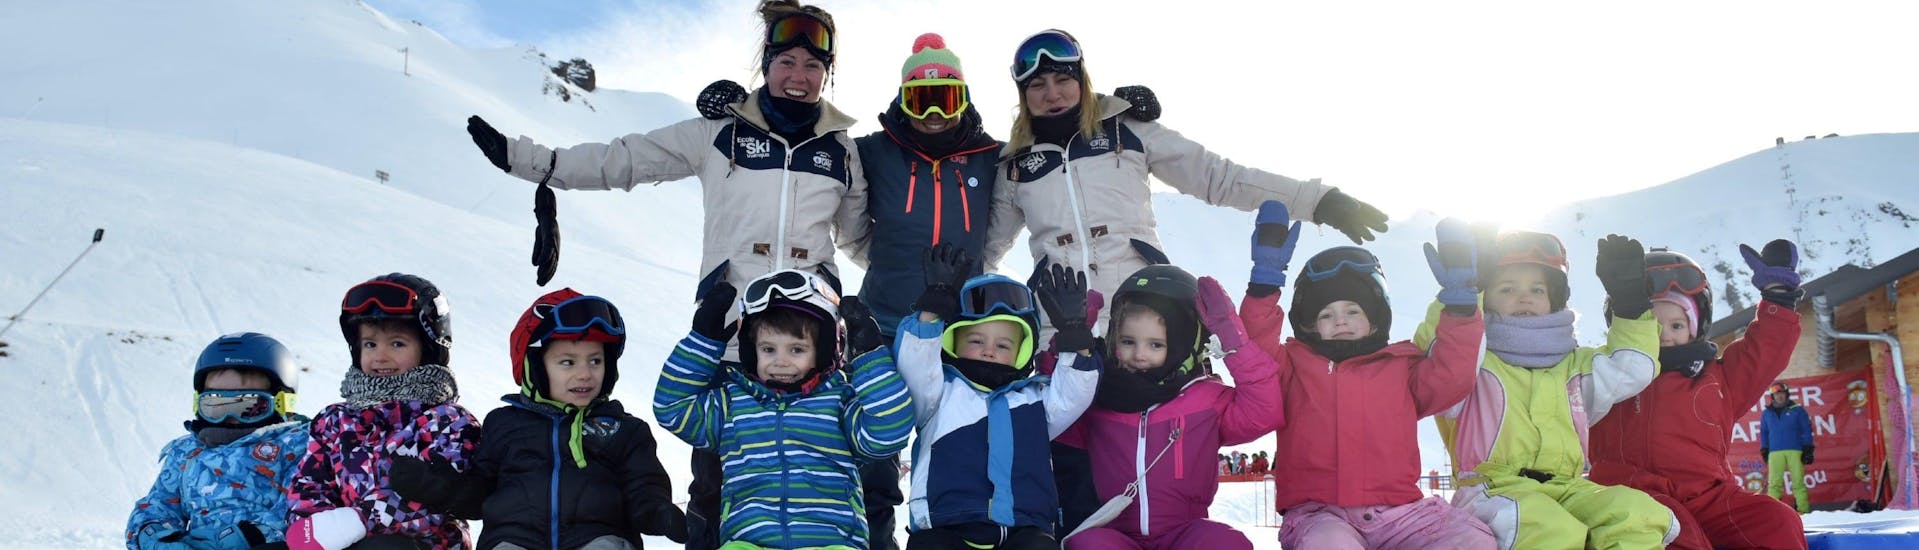 Kinderen zitten met hun skileraren van de skischool ESI Valfréjus in het midden van de kleuterschool tijdens hun Kinderskilessen "Kindergarten" (3-5 jaar).